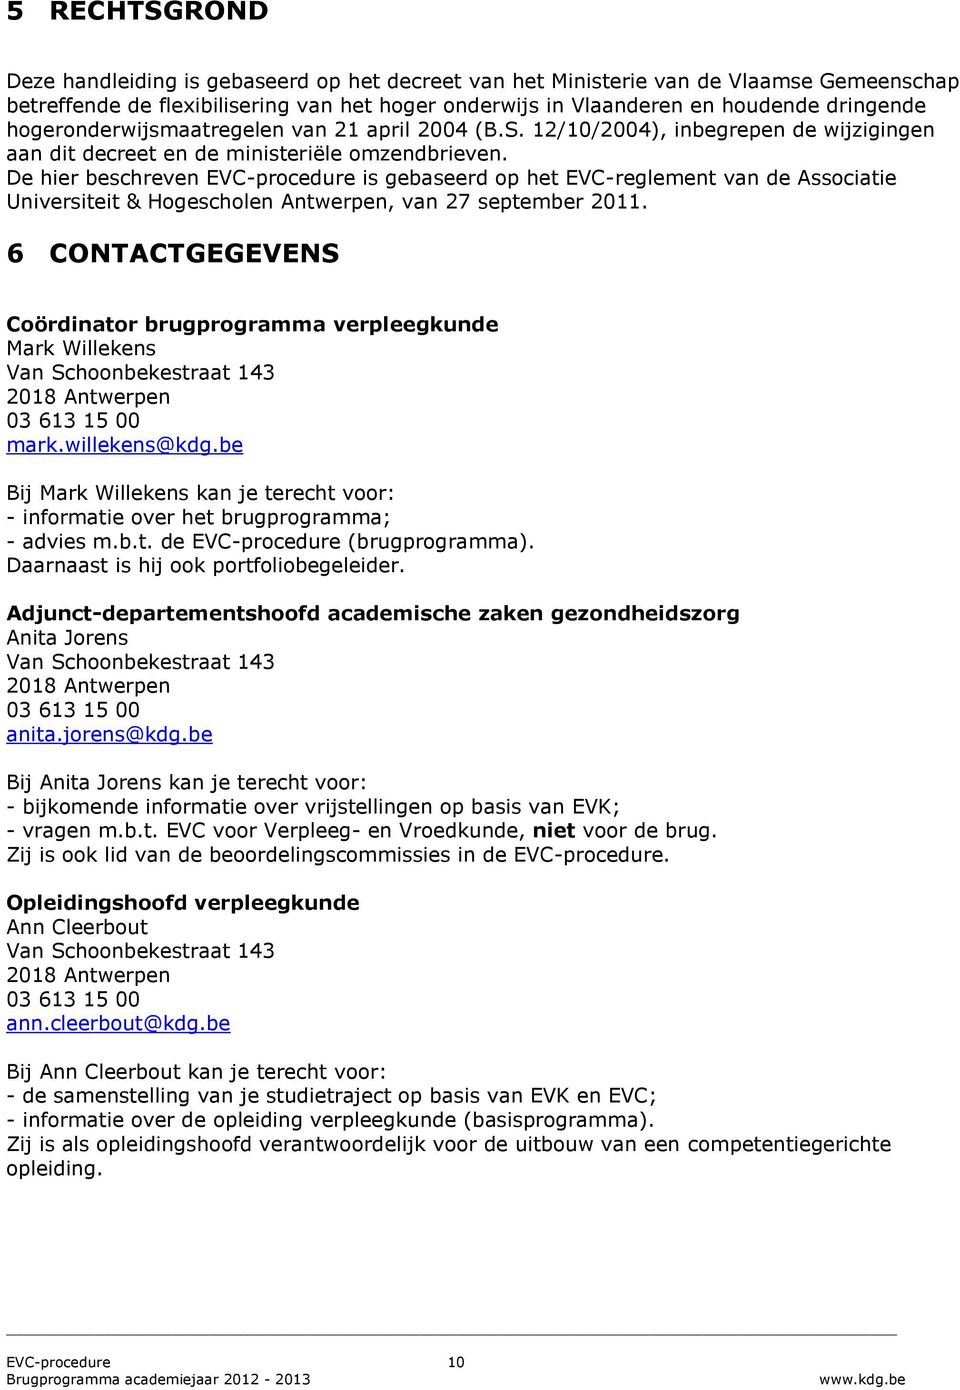 De hier beschreven EVC-procedure is gebaseerd op het EVC-reglement van de Associatie Universiteit & Hogescholen Antwerpen, van 27 september 2011.